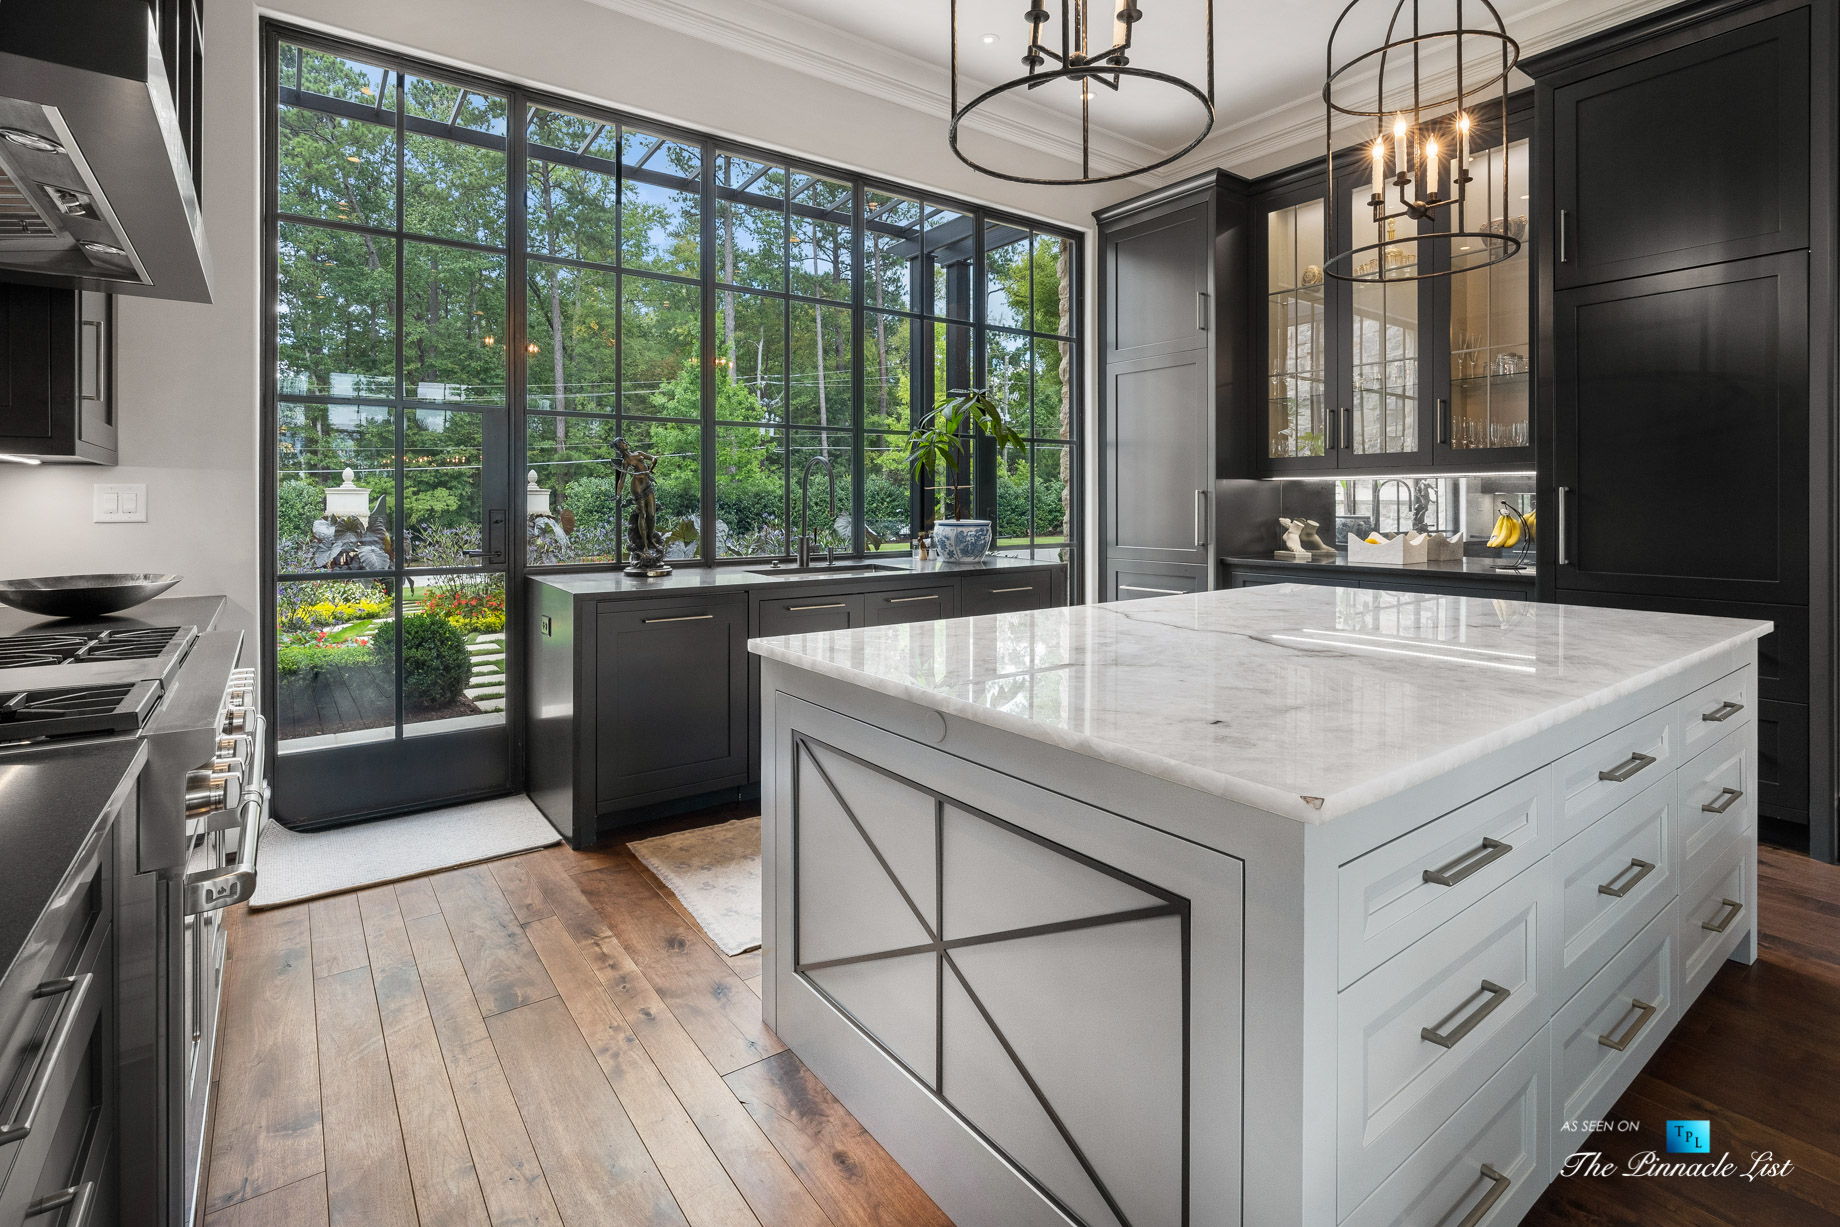 1150 W Garmon Rd, Atlanta, GA, USA – Formal Kitchen with Glass Window View – Luxury Real Estate – Buckhead Estate Home